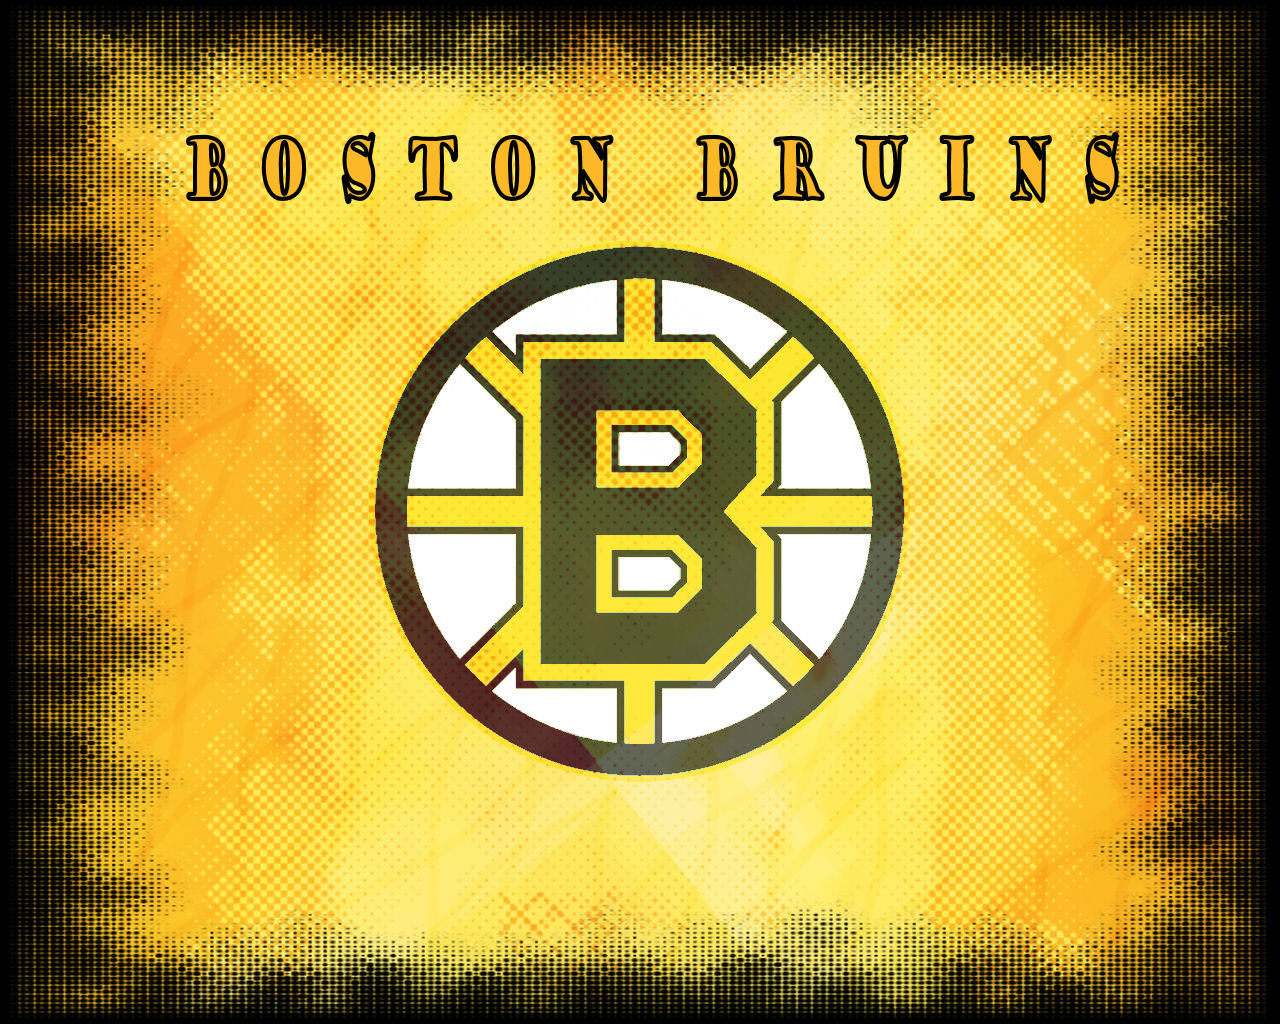 Boston Bruins wallpaper by schrockr on DeviantArt